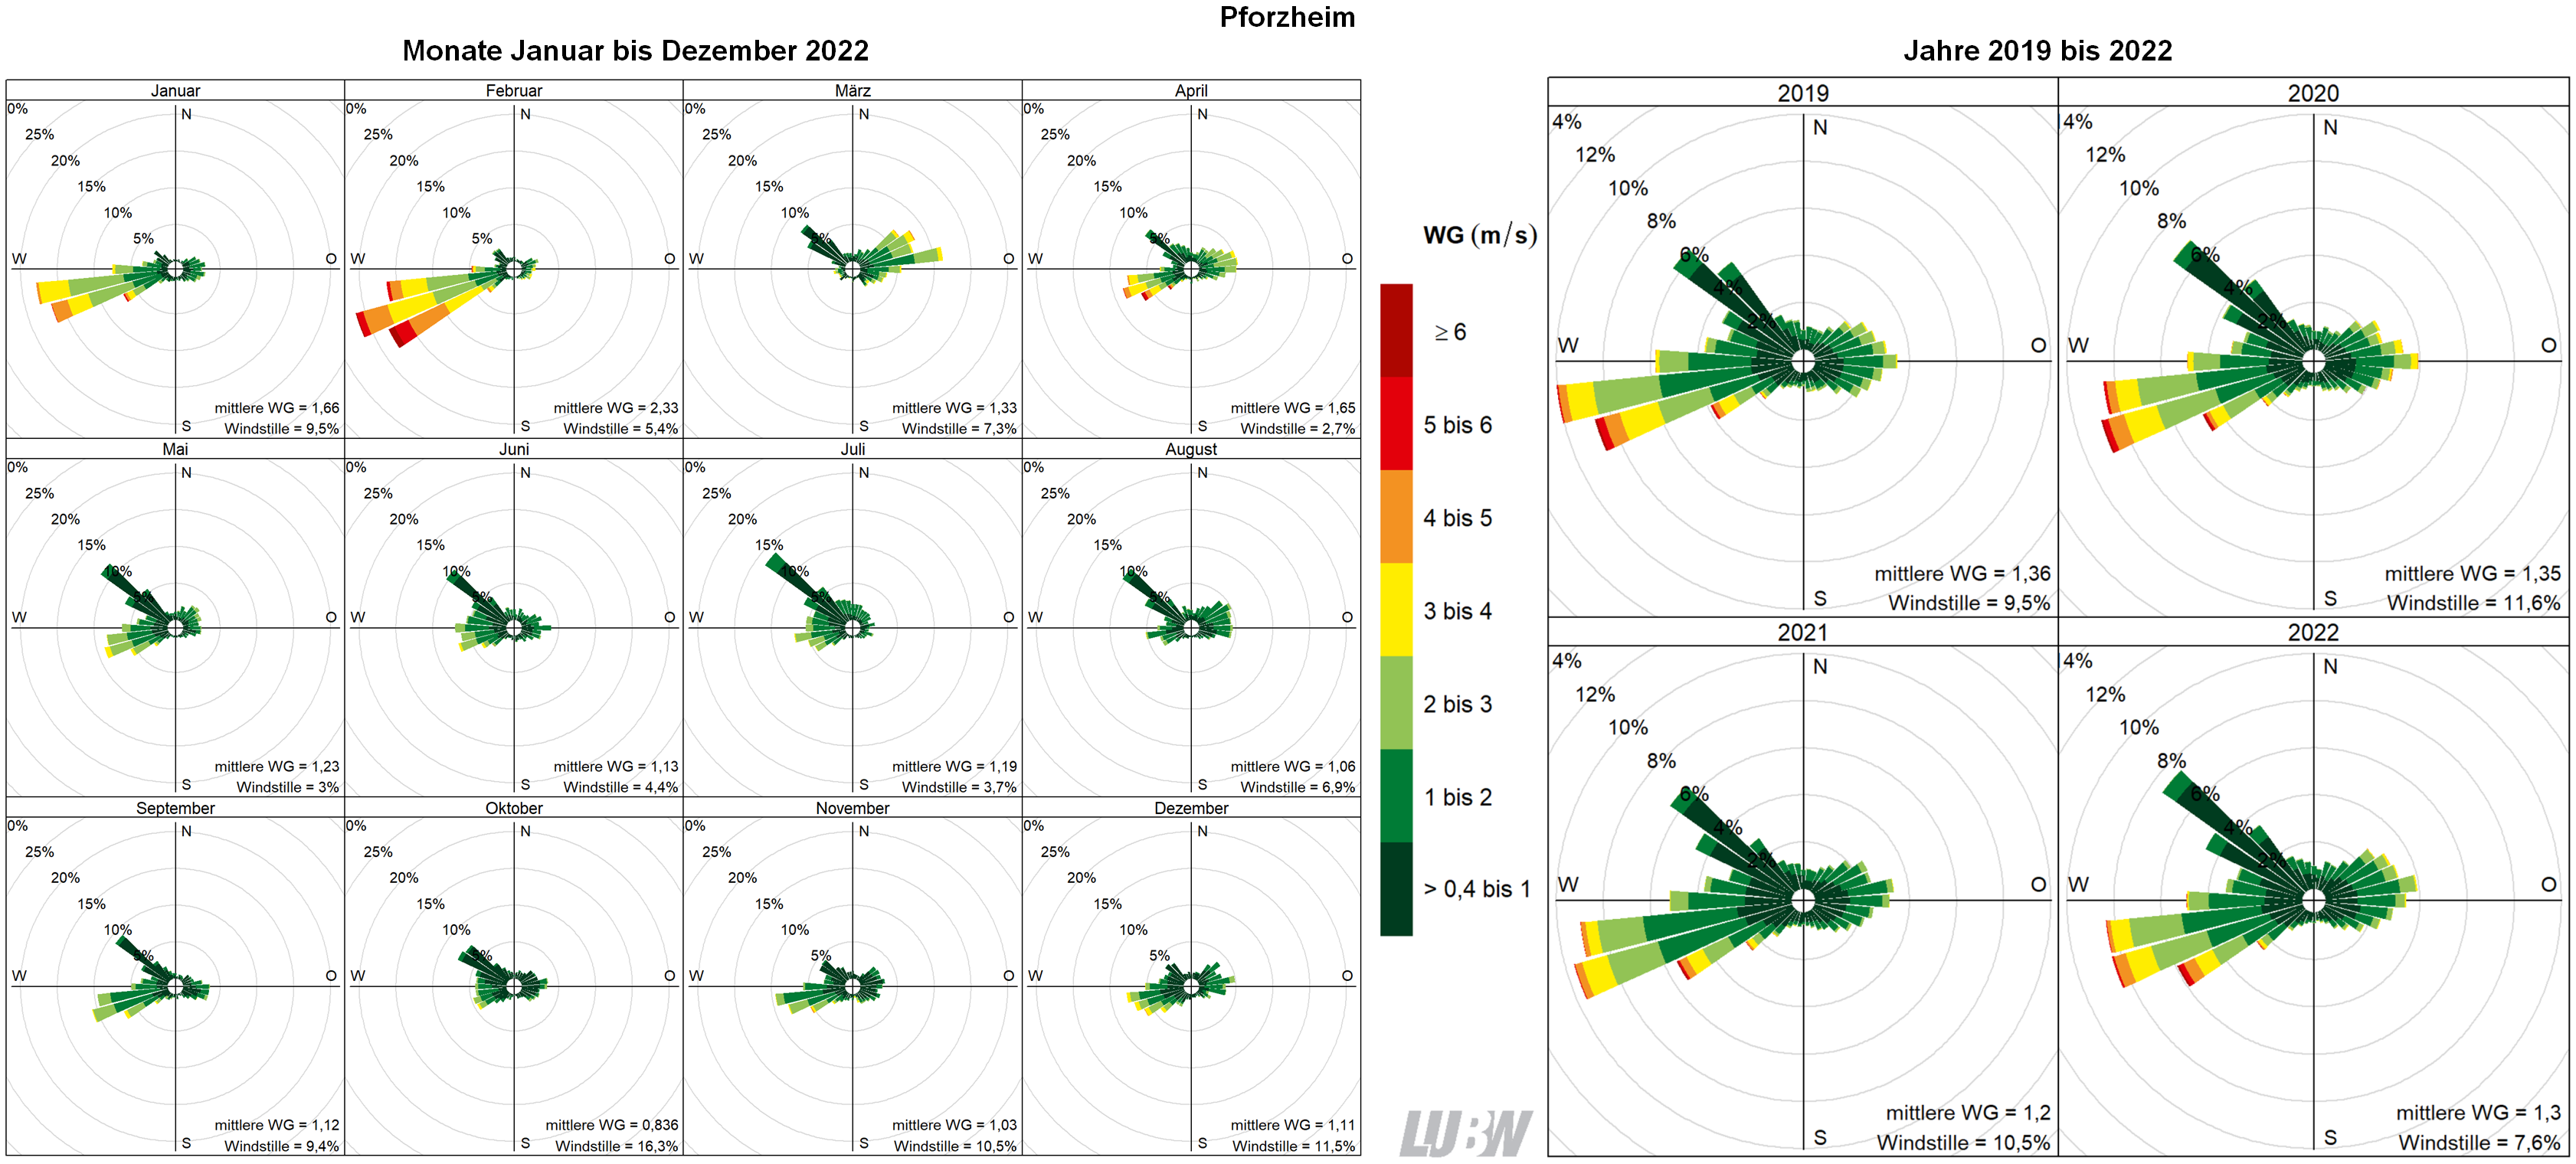  Mitttlere Windverteilung als Windrosen für die Monate Januar bis Dezember 2022 (linke Abbildung) sowie für die Jahre 2019 bis 2022 (rechte Abbildung) für den Standort Pforzheim. Weitere Informationen im umliegenden Text. 